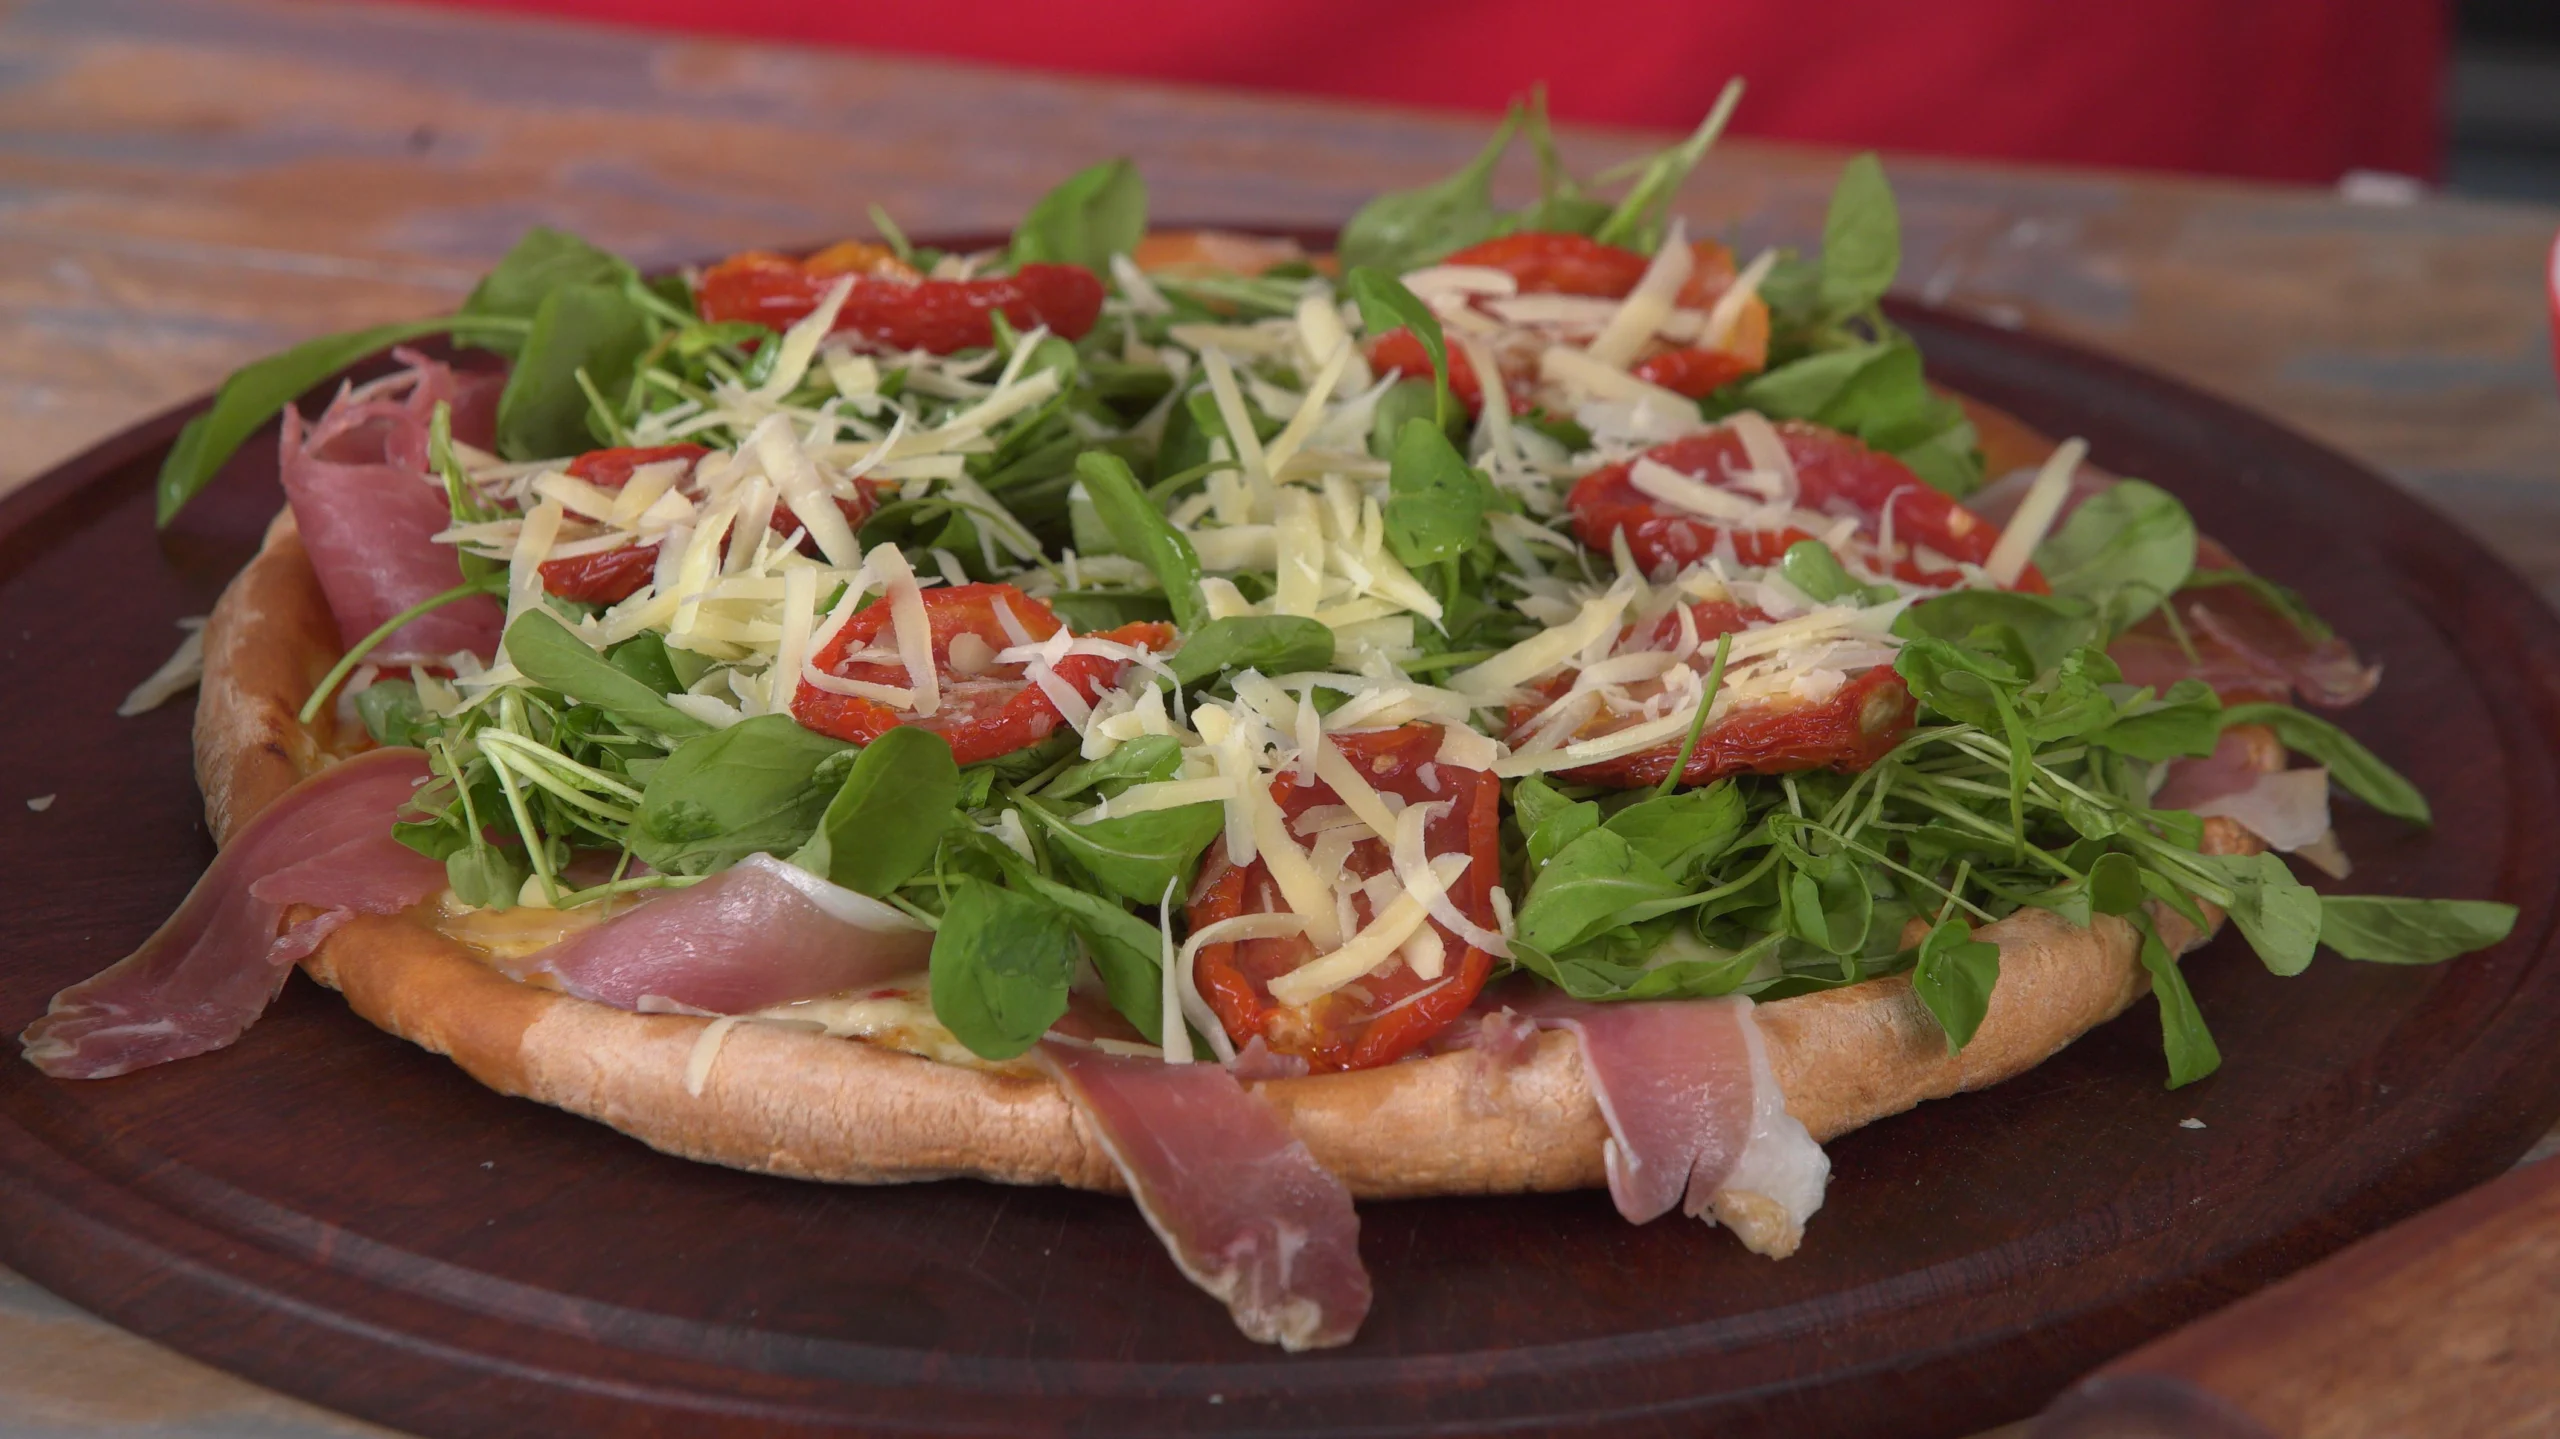 pizza de rucula y jamon crudo - Cuántas calorías tiene la pizza de rucula